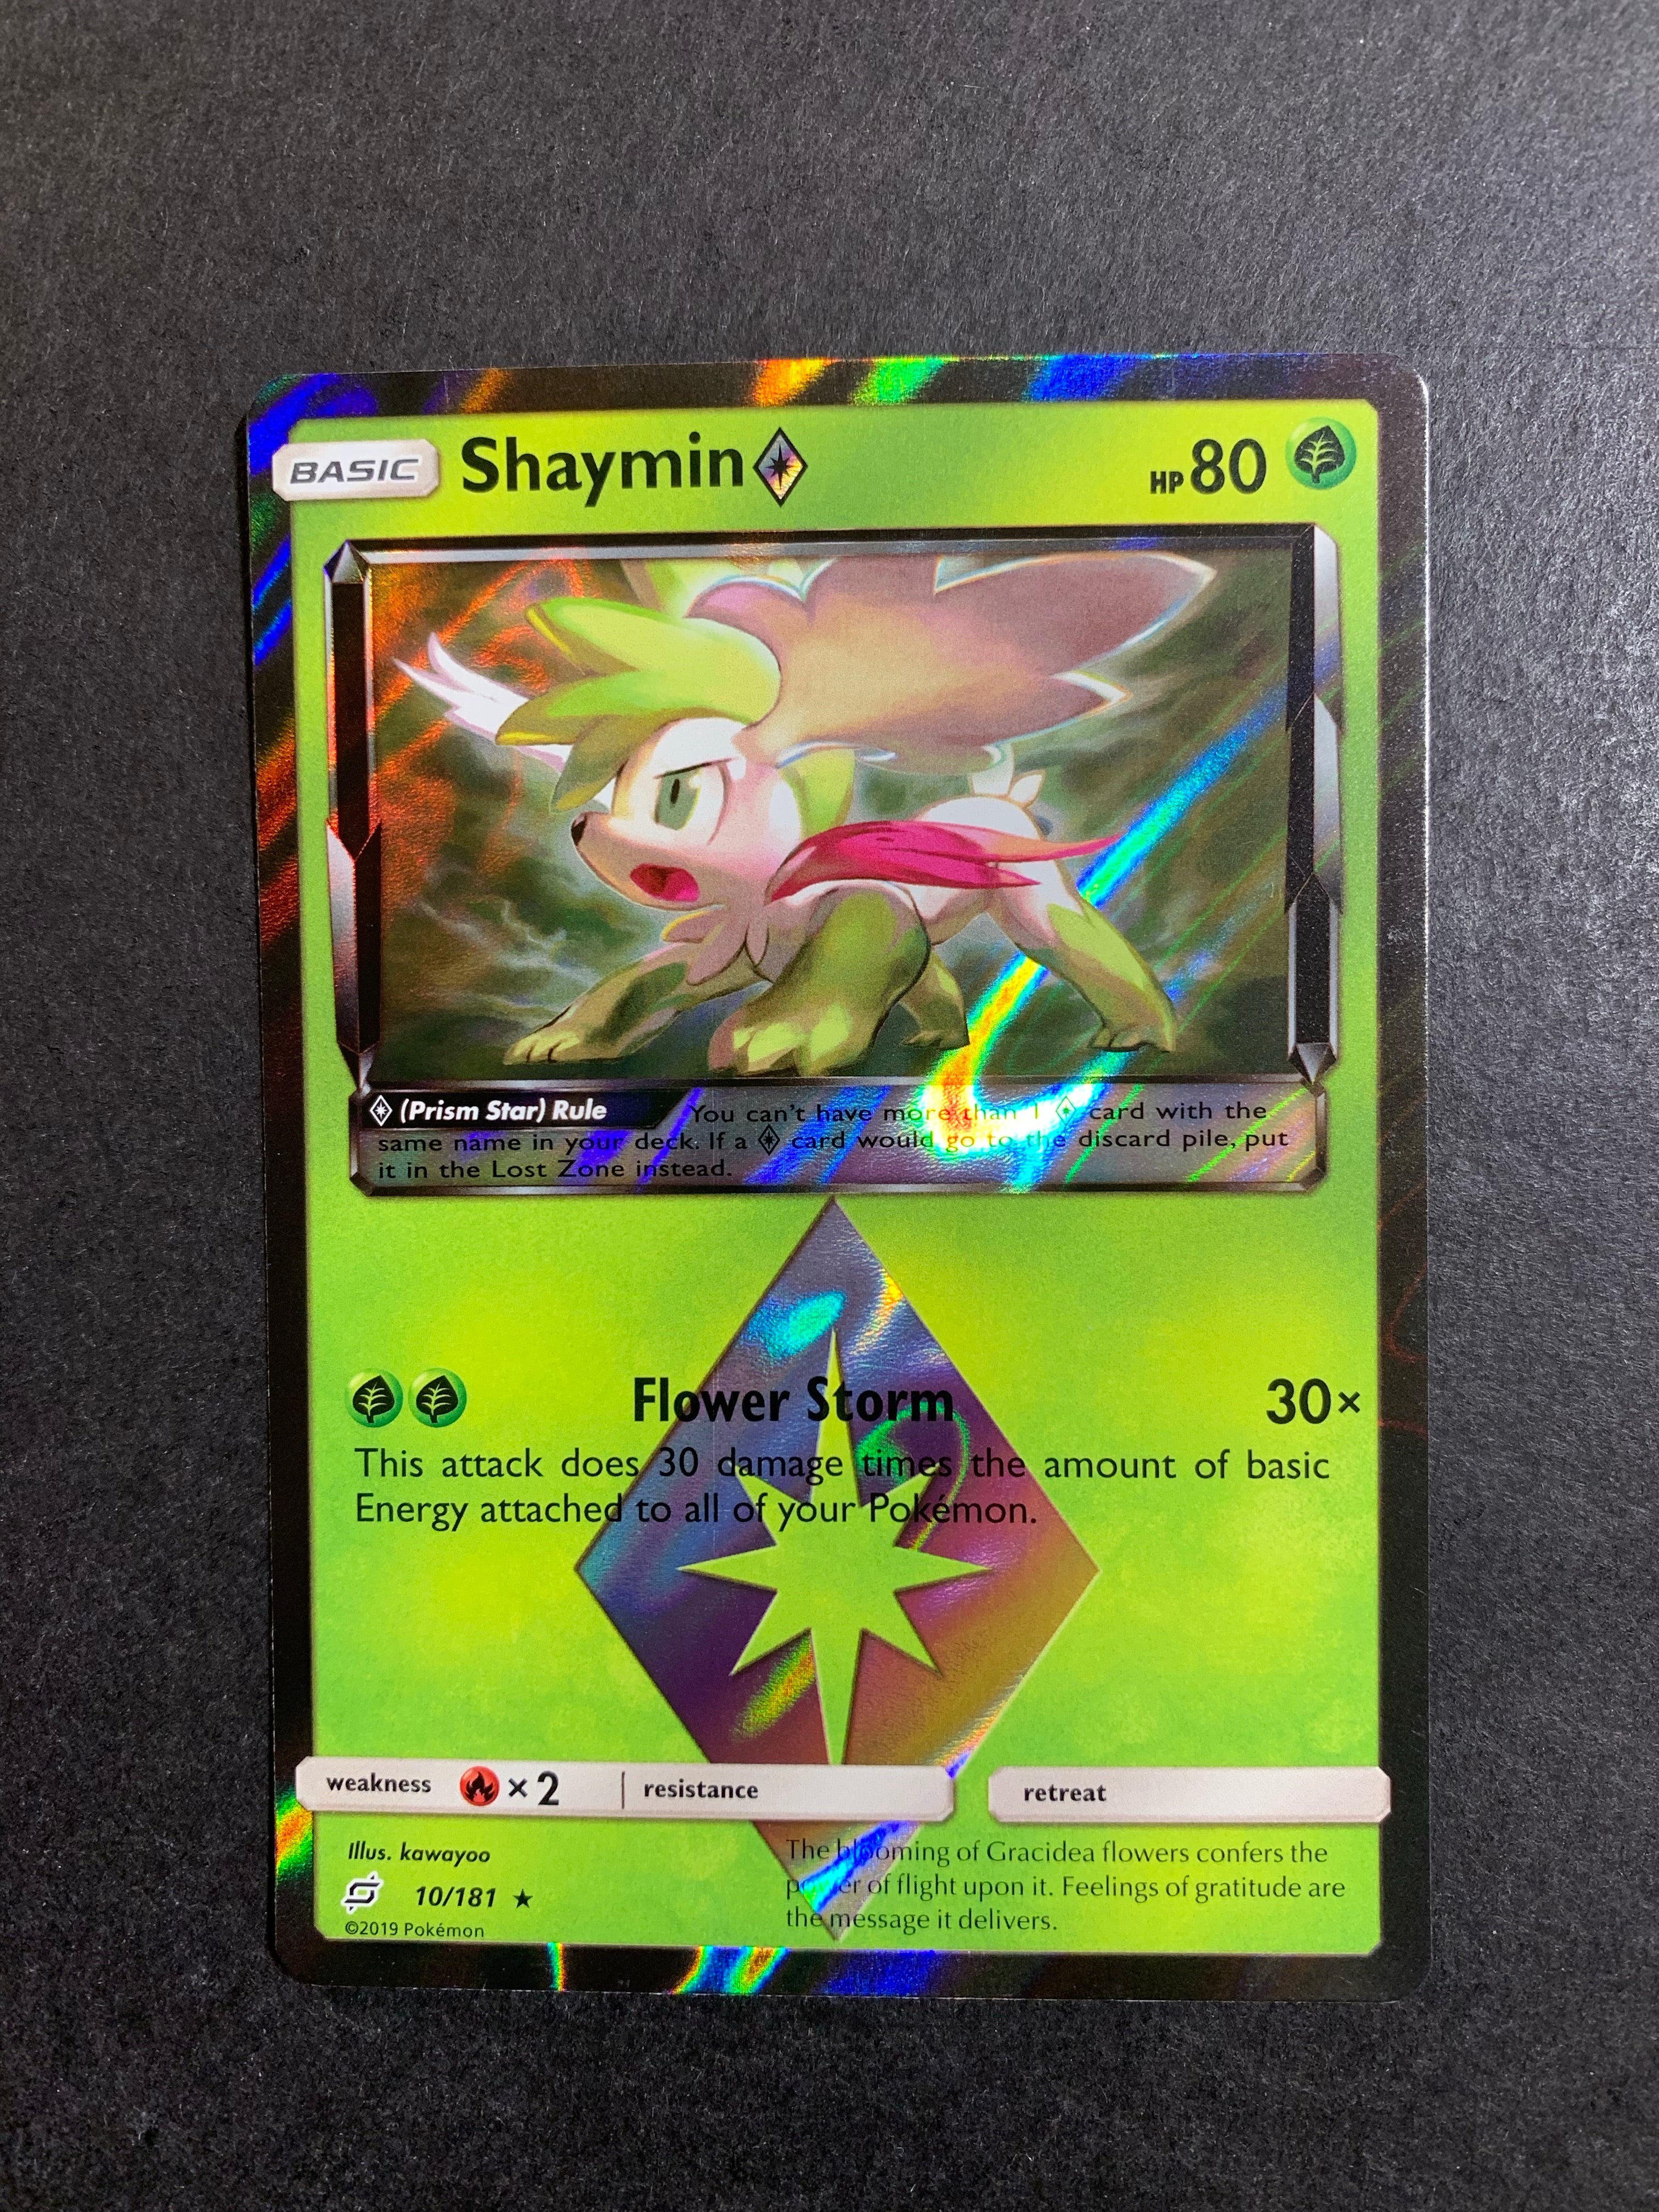 Card Shaymin ◇ 10/181 da coleção Team Up